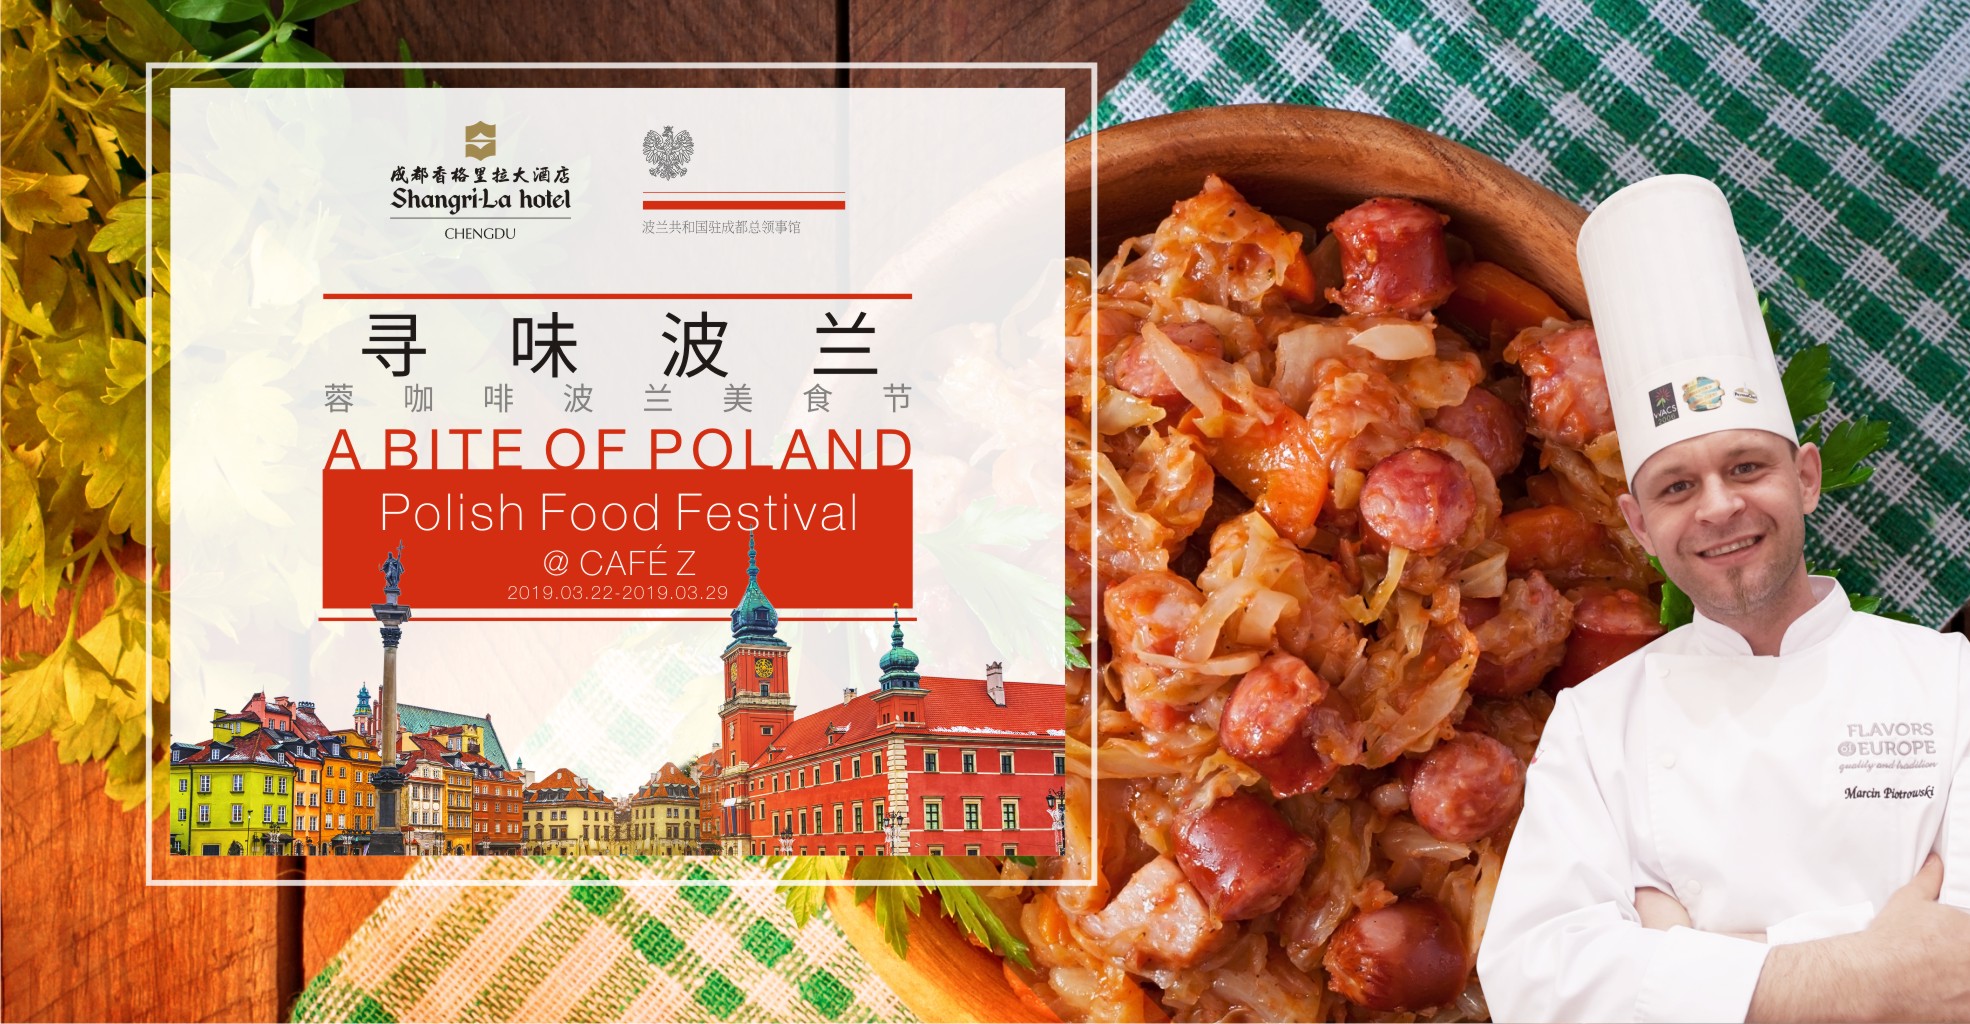 成都香格里拉大酒店蓉咖啡举办波兰美食节-中国网地产